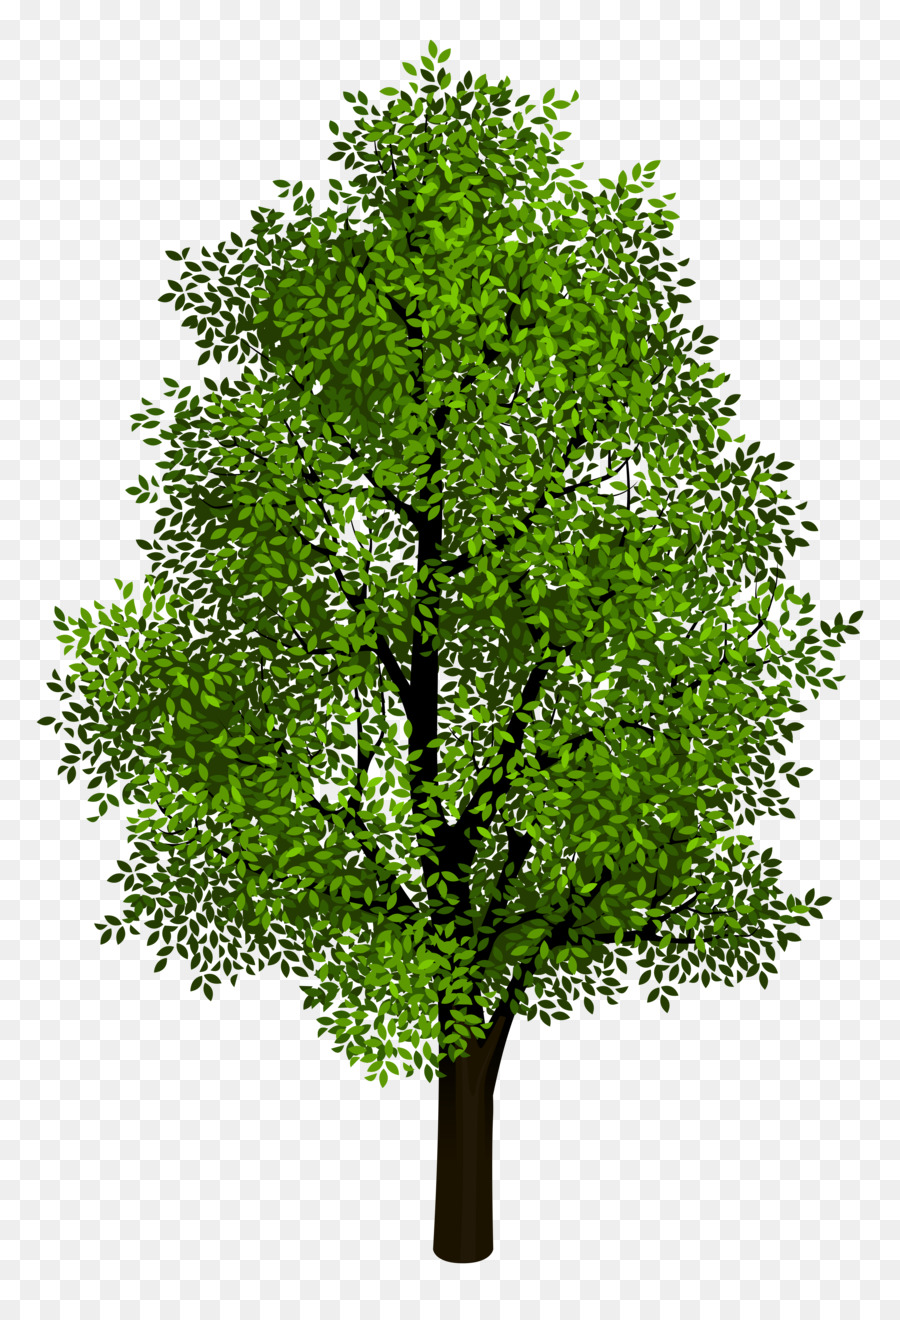 Tree Clip art - Transparent Tree Cliparts png download - 3677*5312 - Free Transparent Tree png Download.